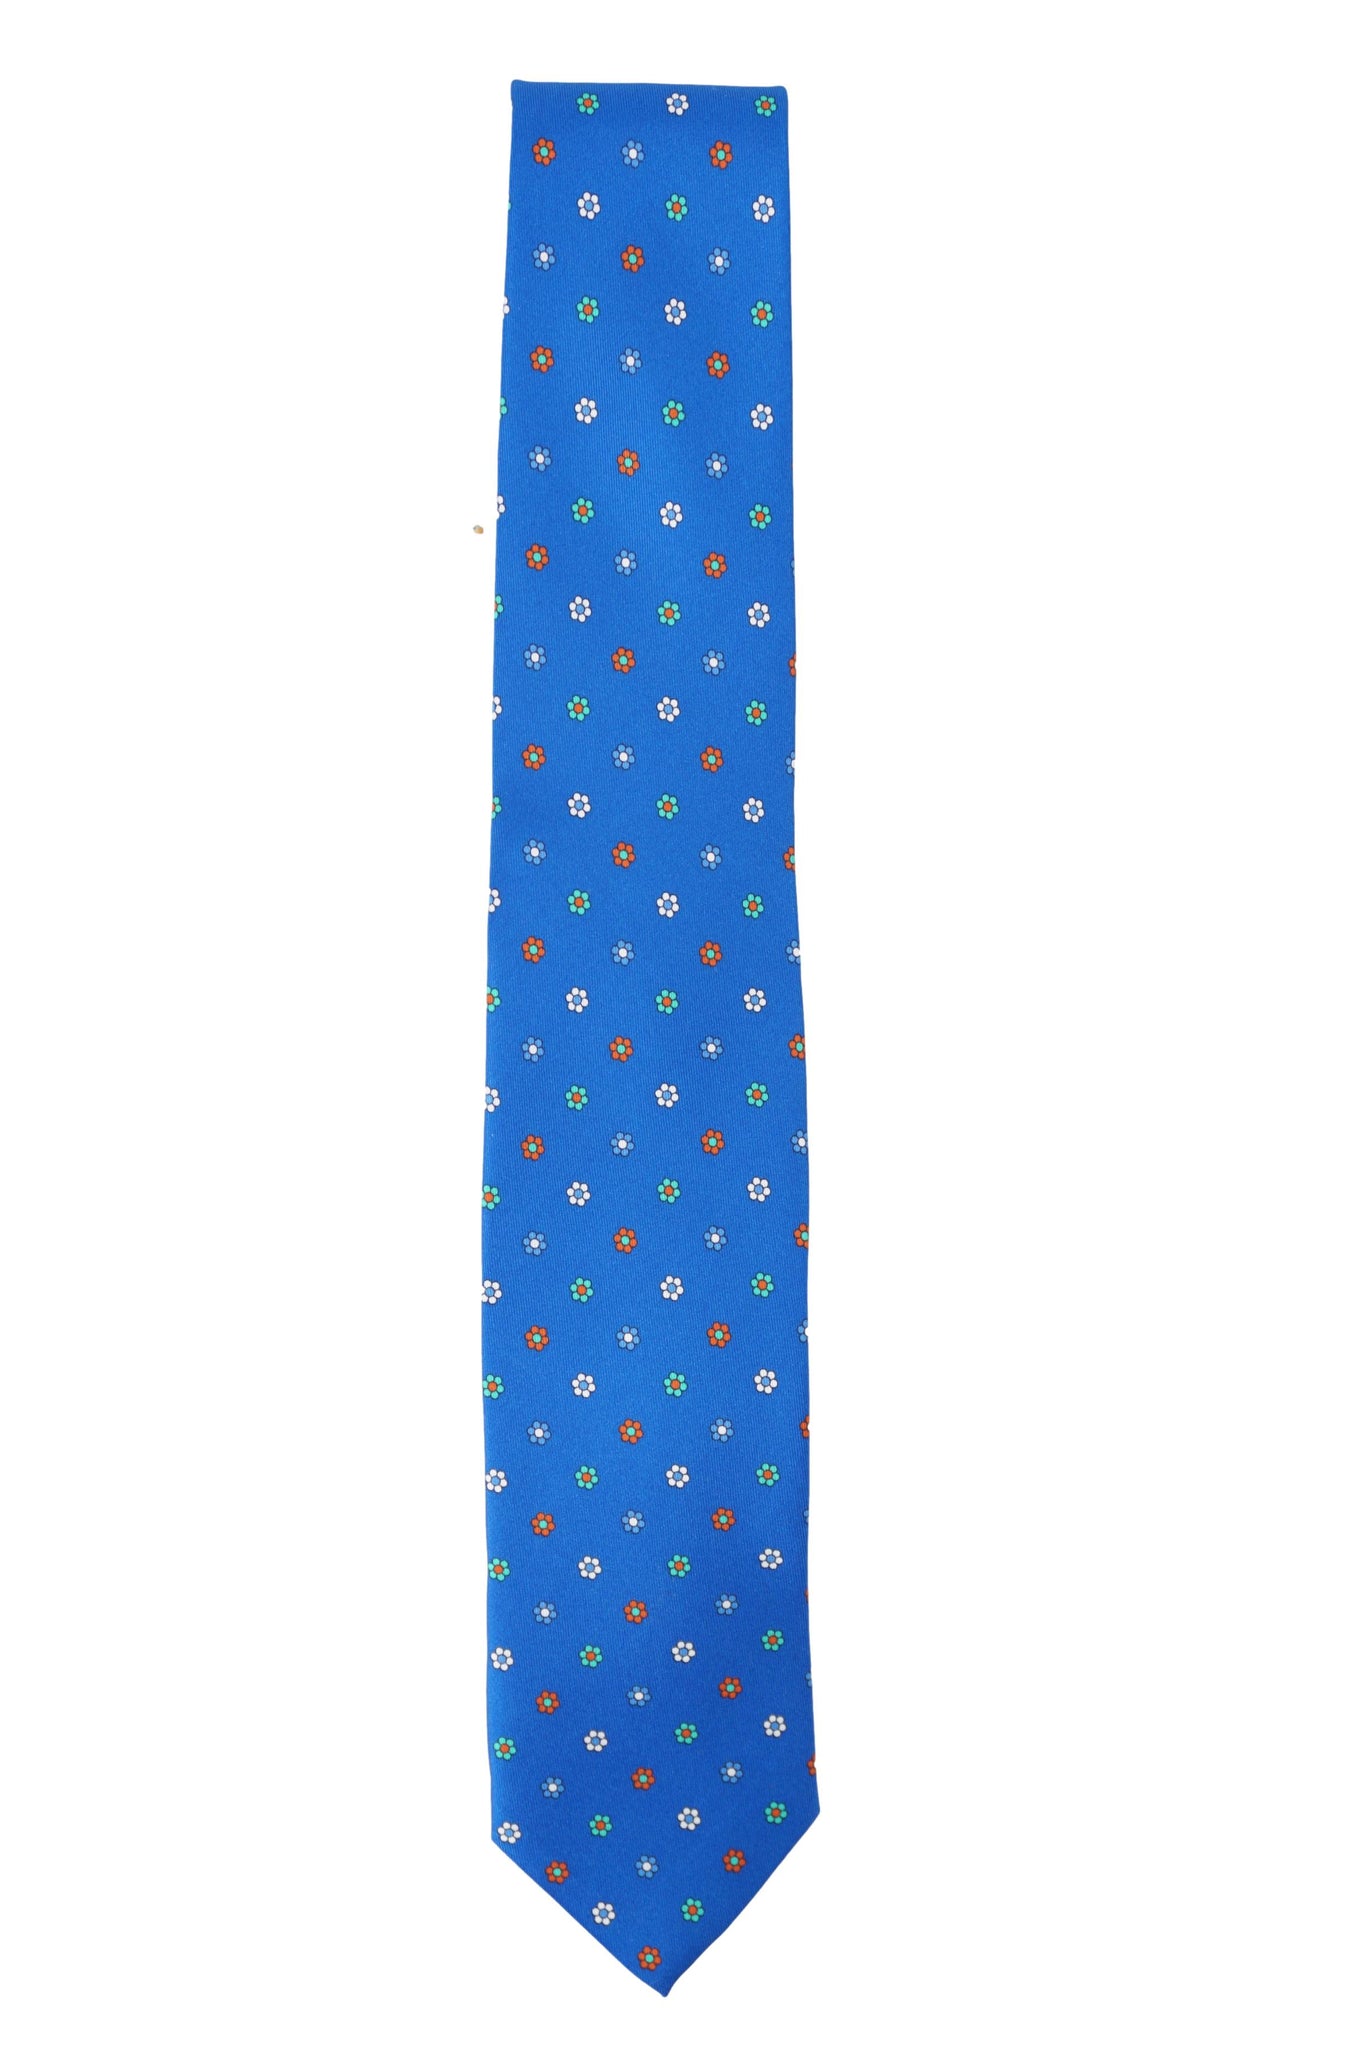 Cravatta in Seta con Fantasia / Bluette - Ideal Moda